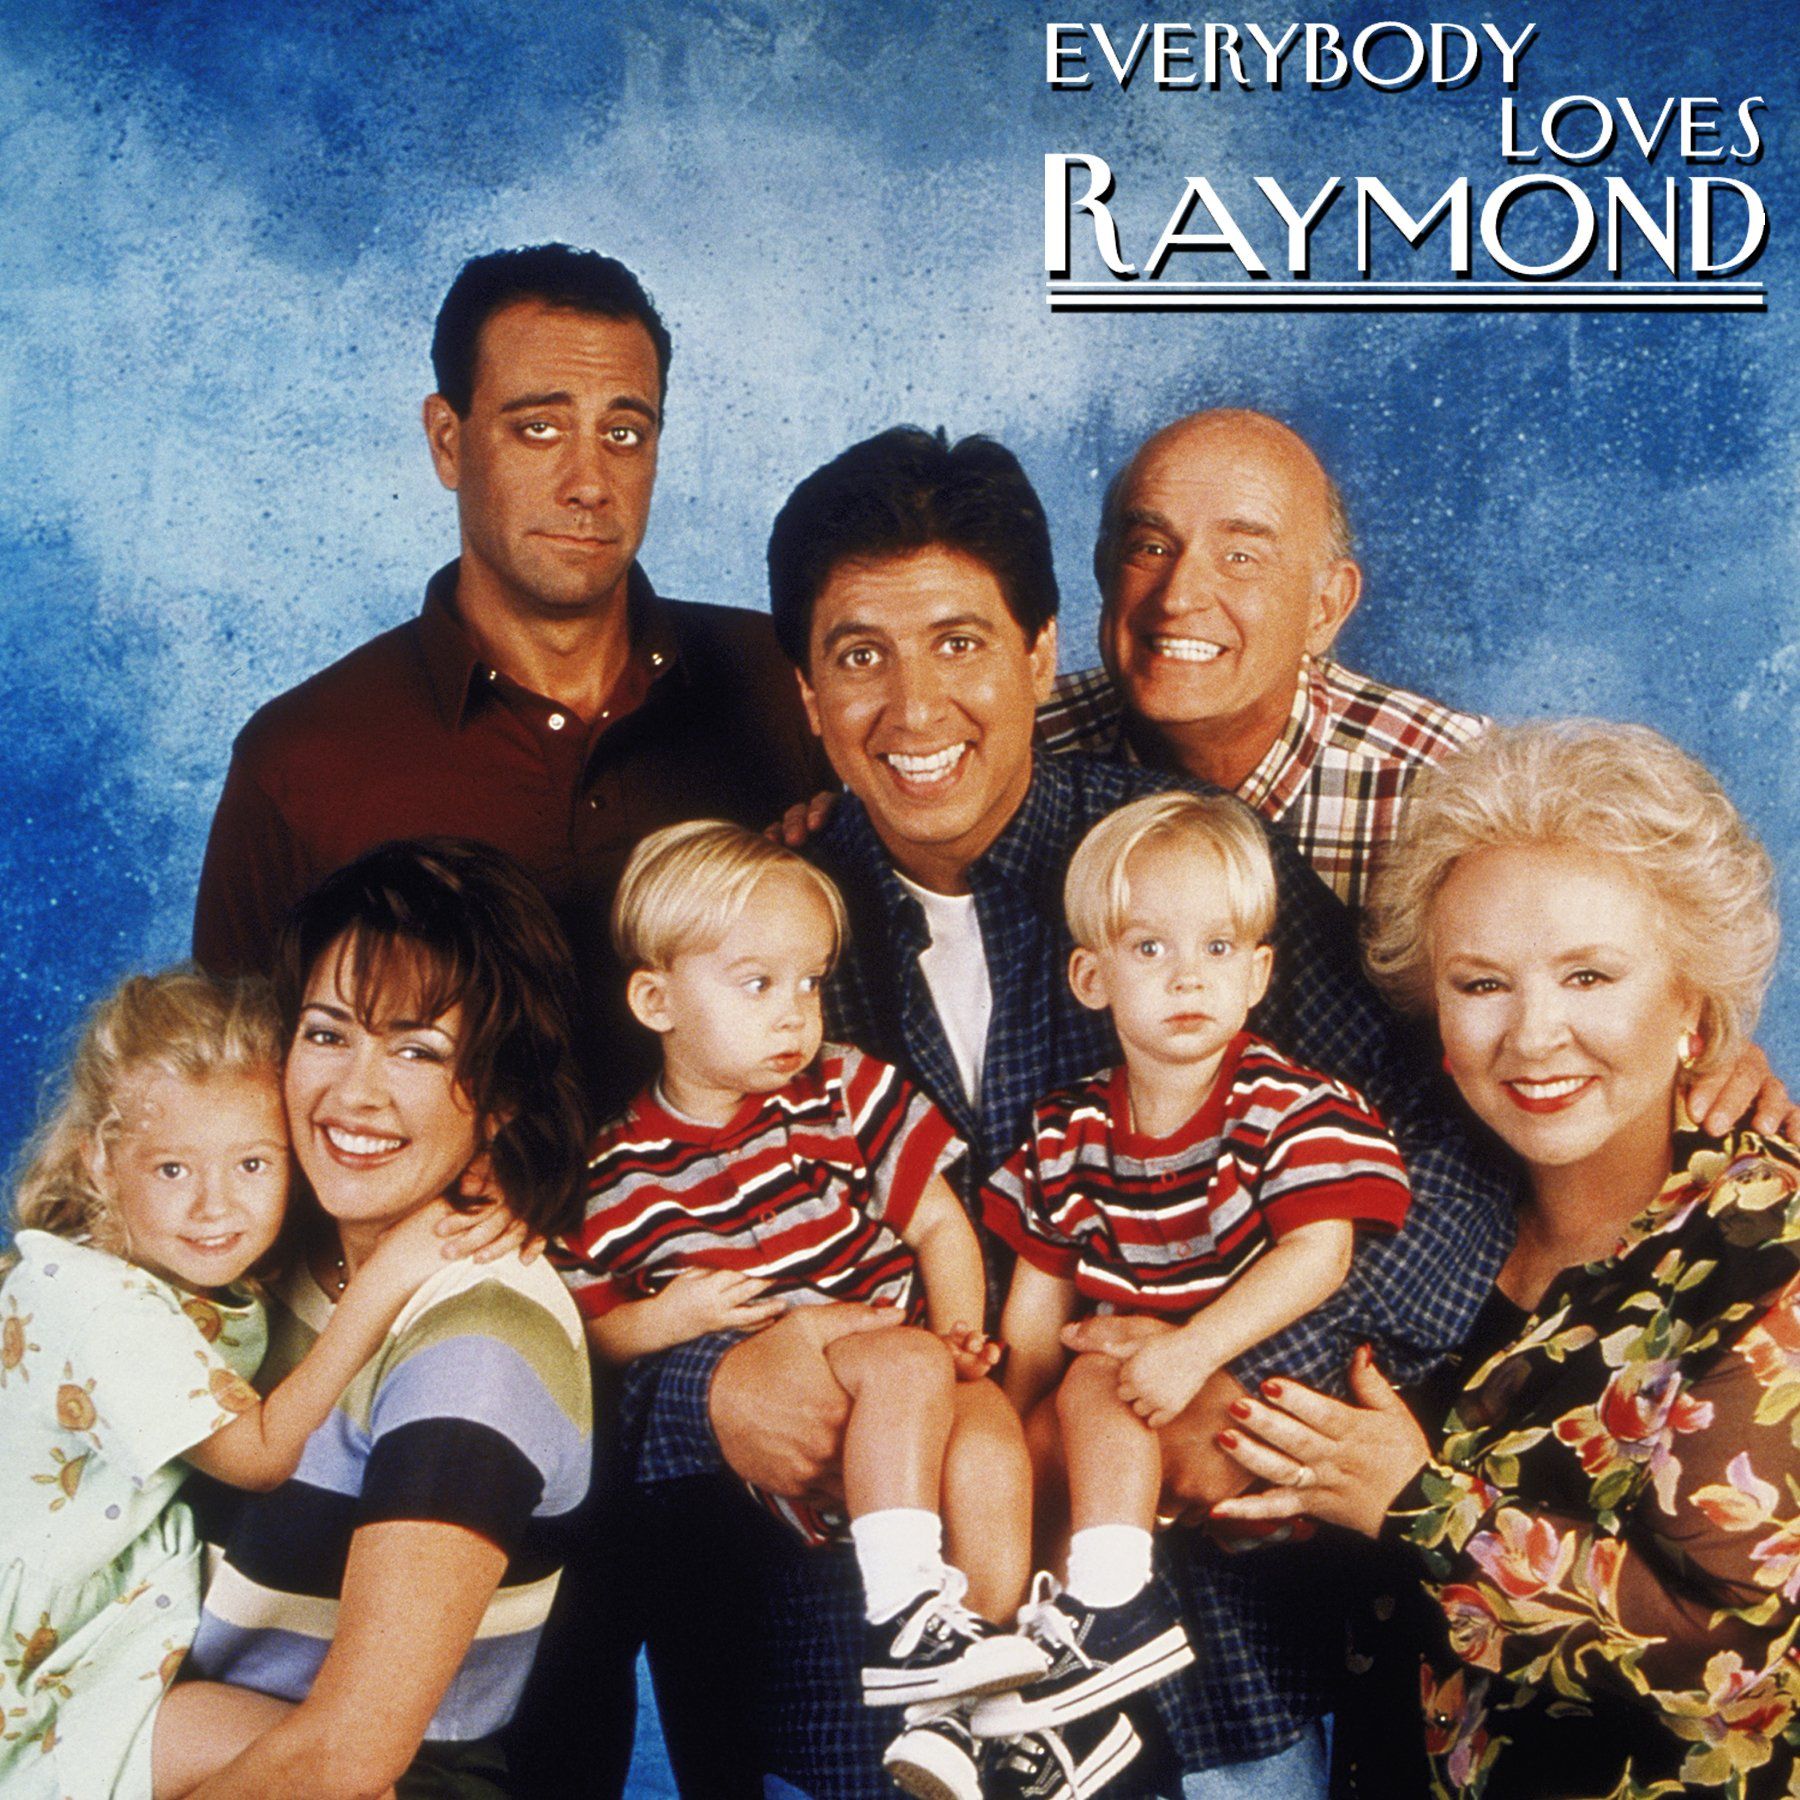 EVERYBODY LOVES RAYMOND television series comedy sitcom (3) wallpaperx1800